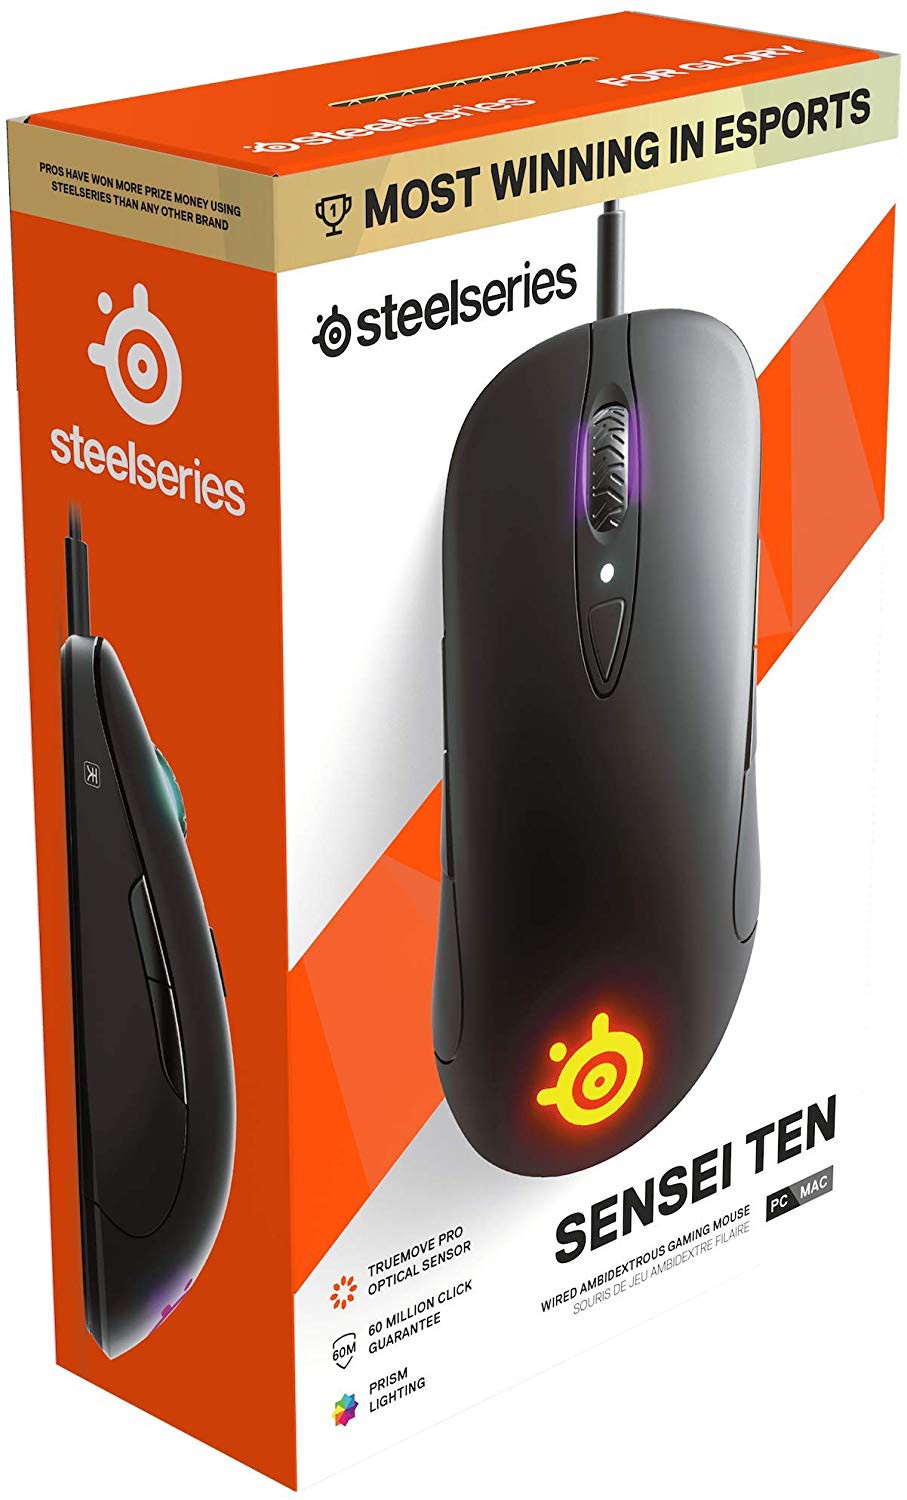 SteelSeries SENSEI TEN juoda laidinė žaidimų optinė pelė | 18000 DPI